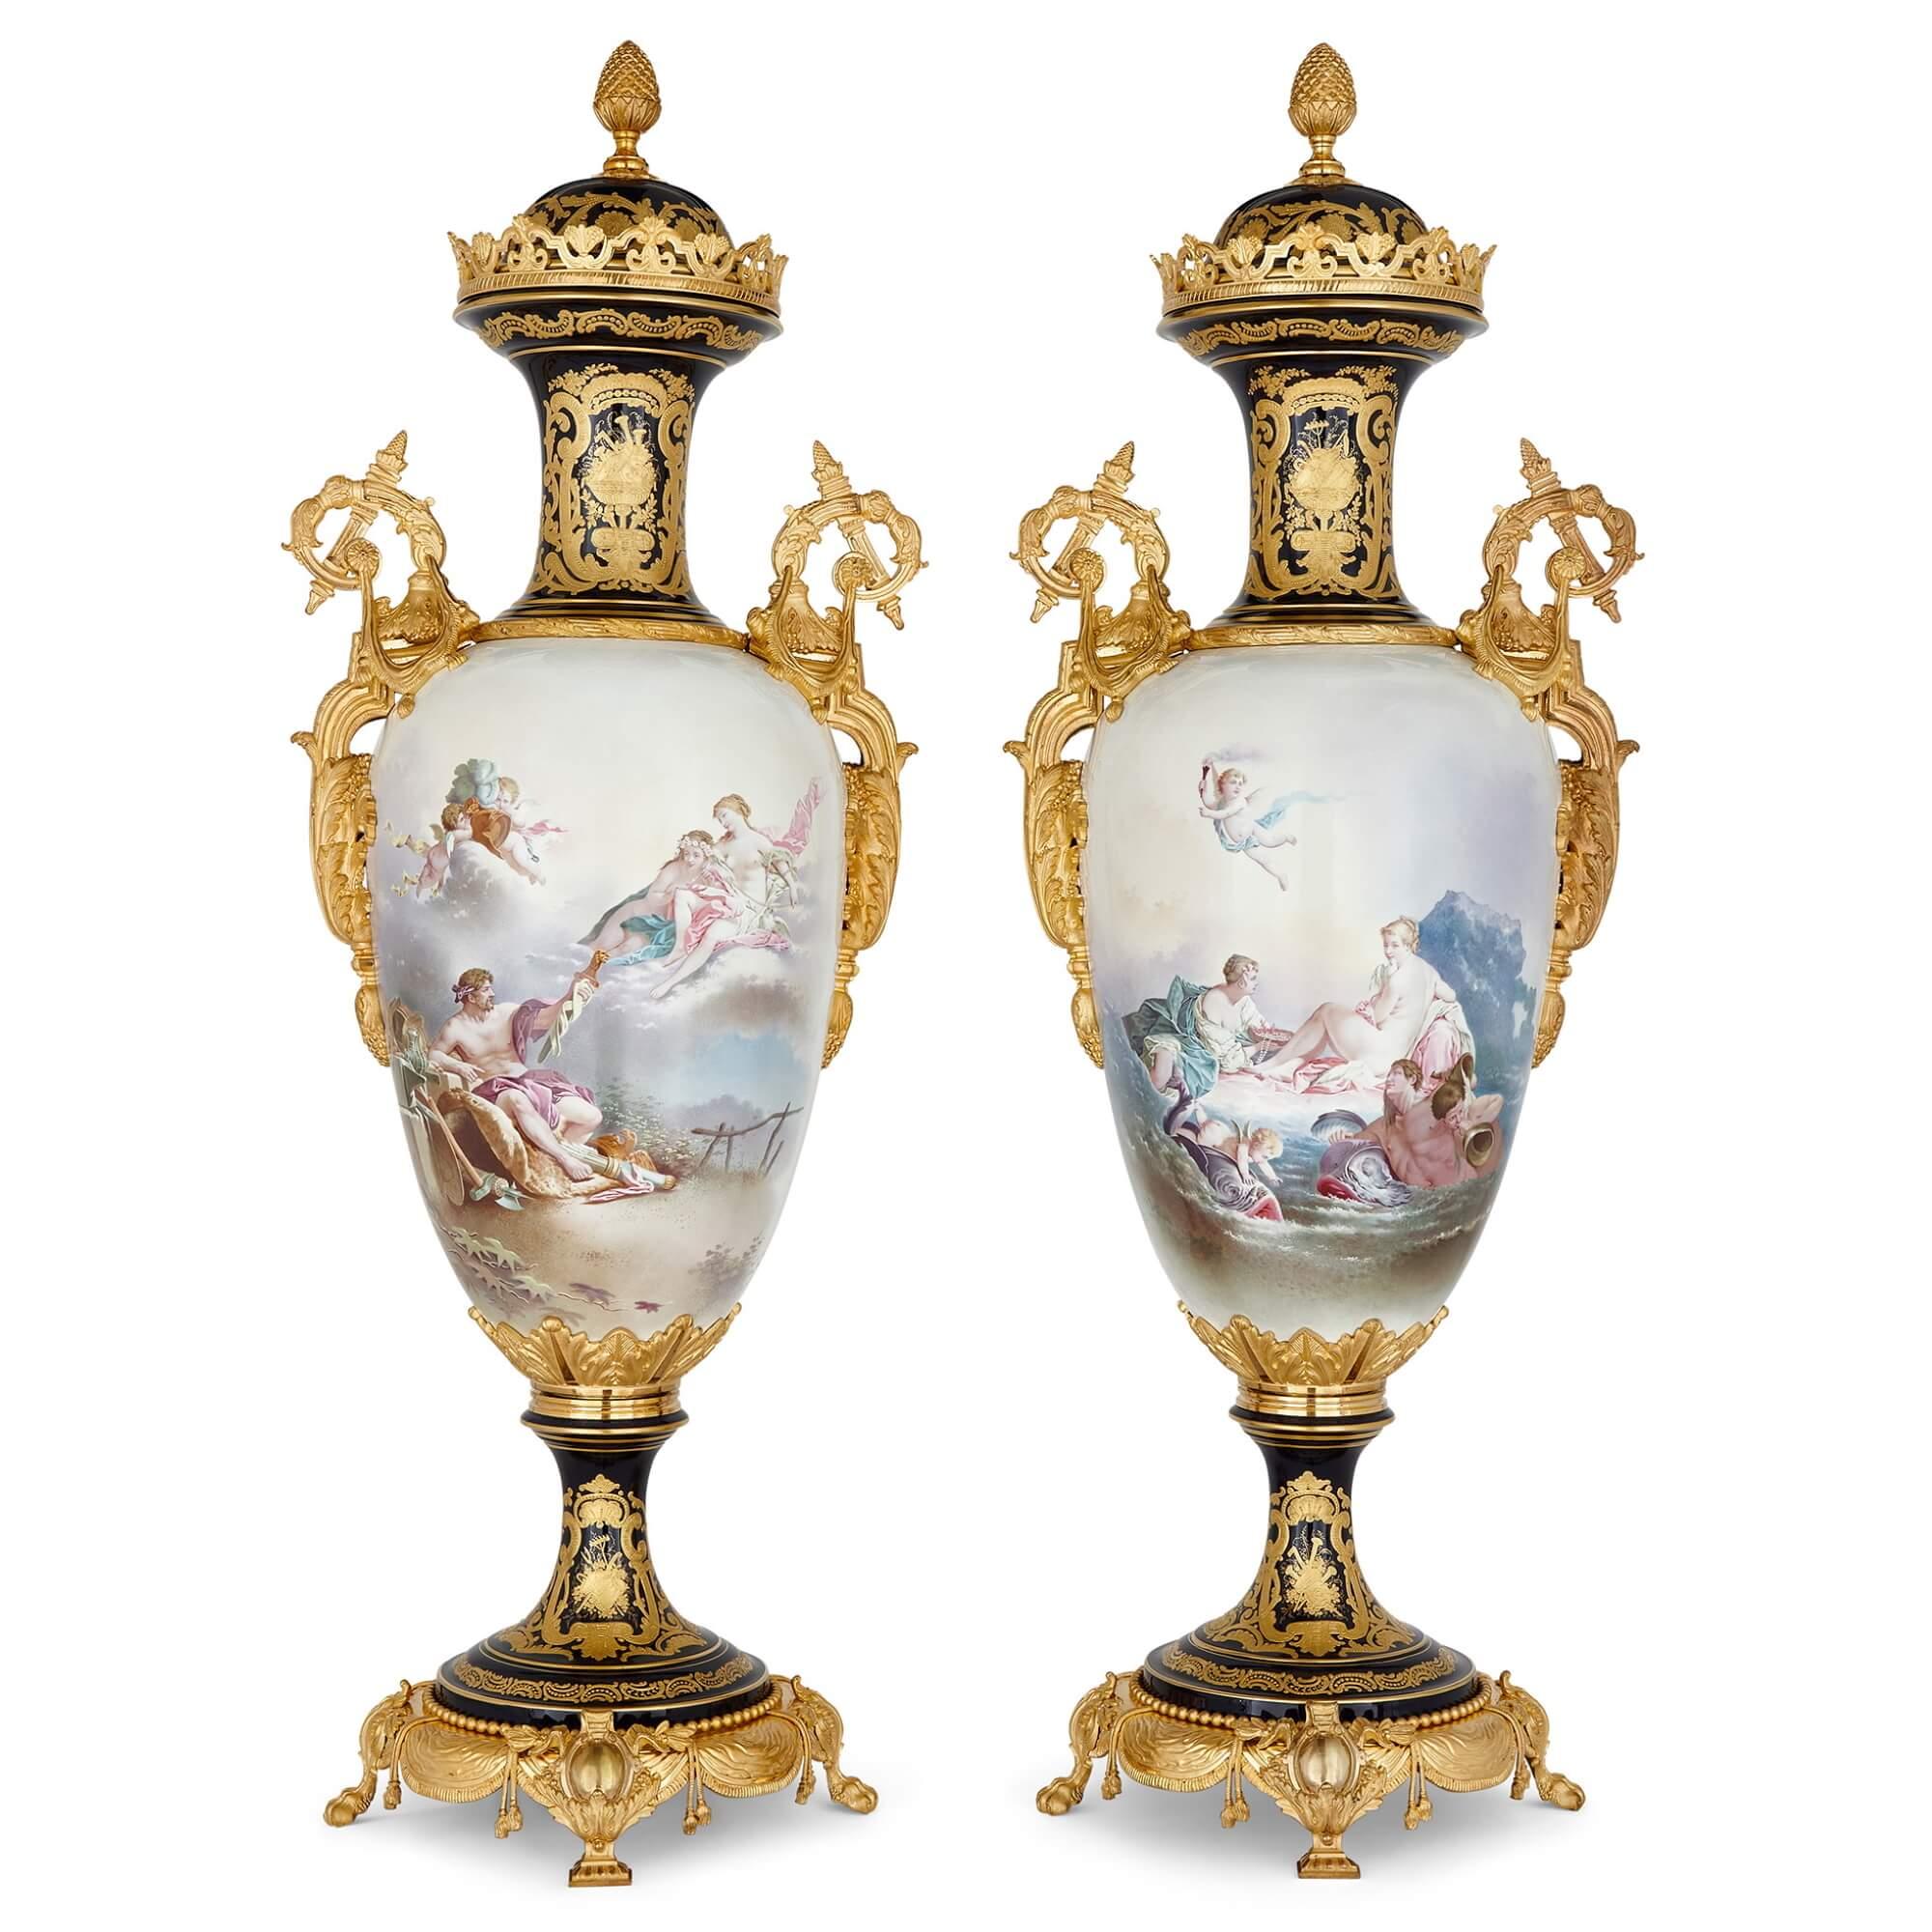 Paire de grands vases en porcelaine de Sèvres montés en bronze doré.
France, fin du 19e siècle.
Dimensions : hauteur 130 cm, largeur 45 cm, profondeur 35 cm.

Ces étonnants vases en porcelaine ont été fabriqués en France à la fin du XIXe siècle